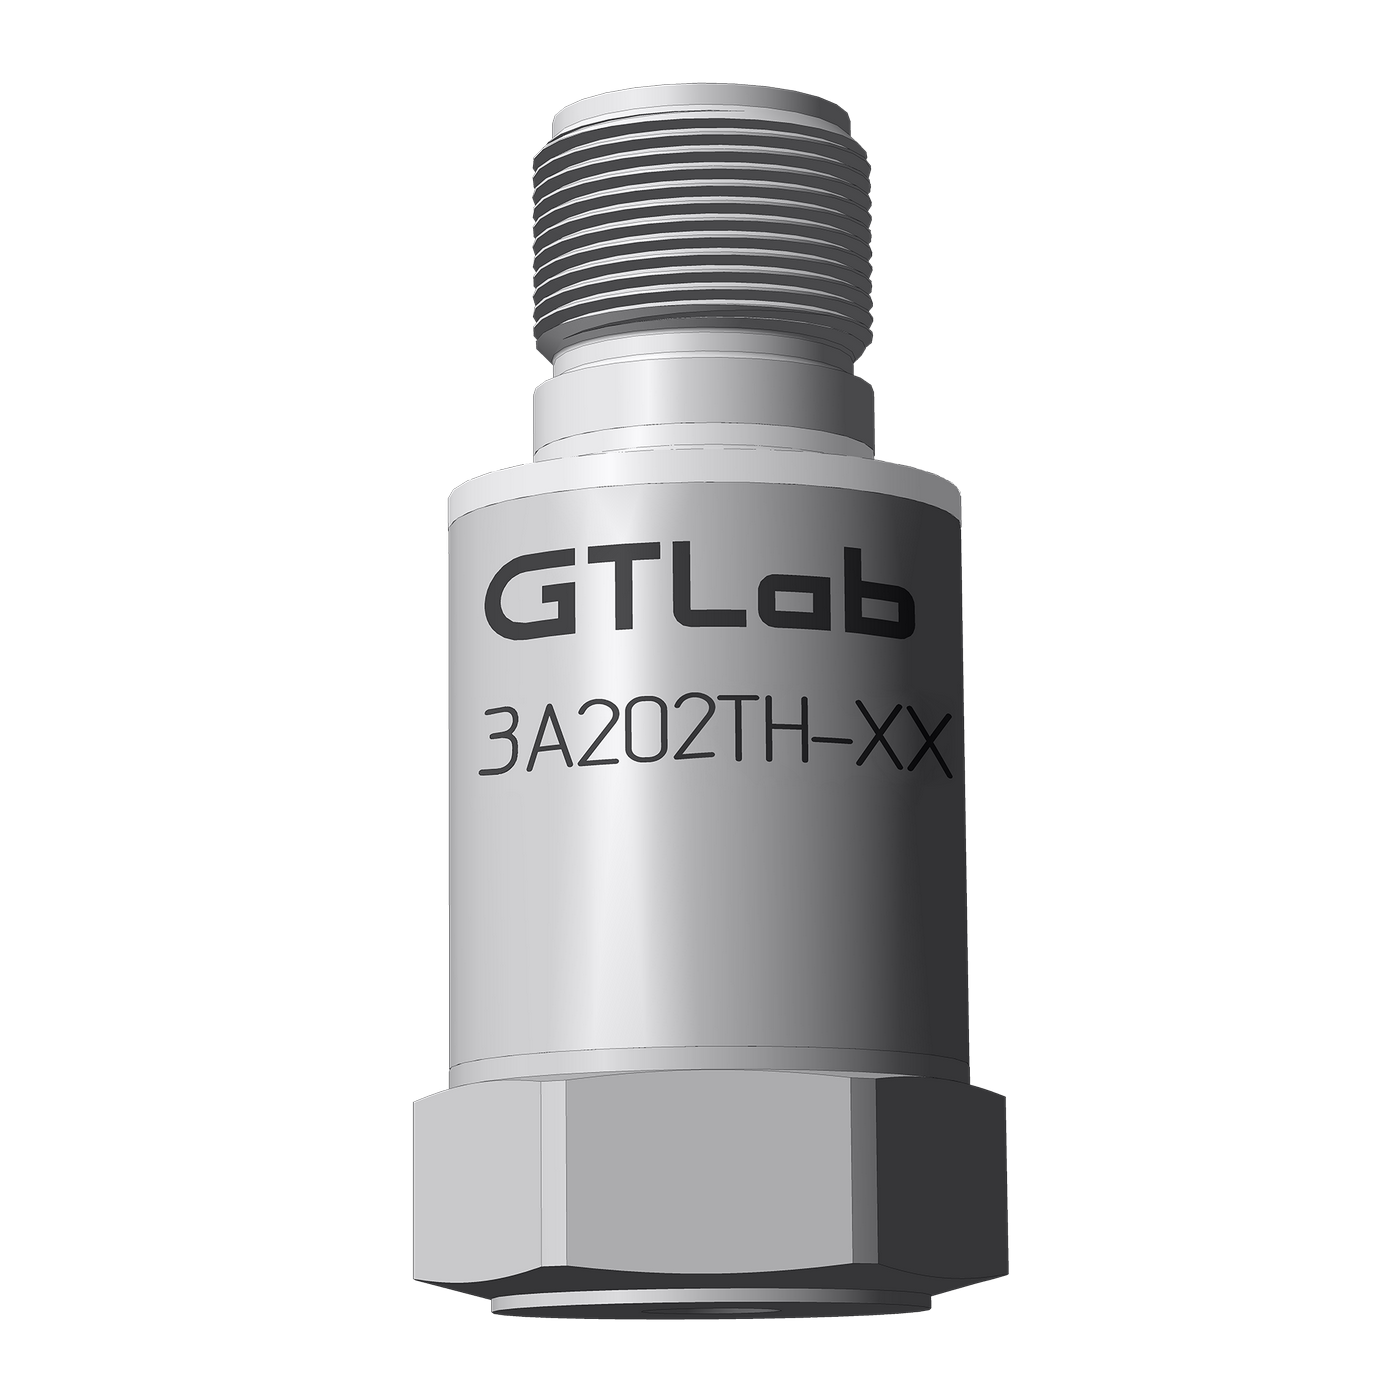 Датчик виброперемещения с токовым выходом промышленный GTLAB 3A202TH-80 Дозиметры